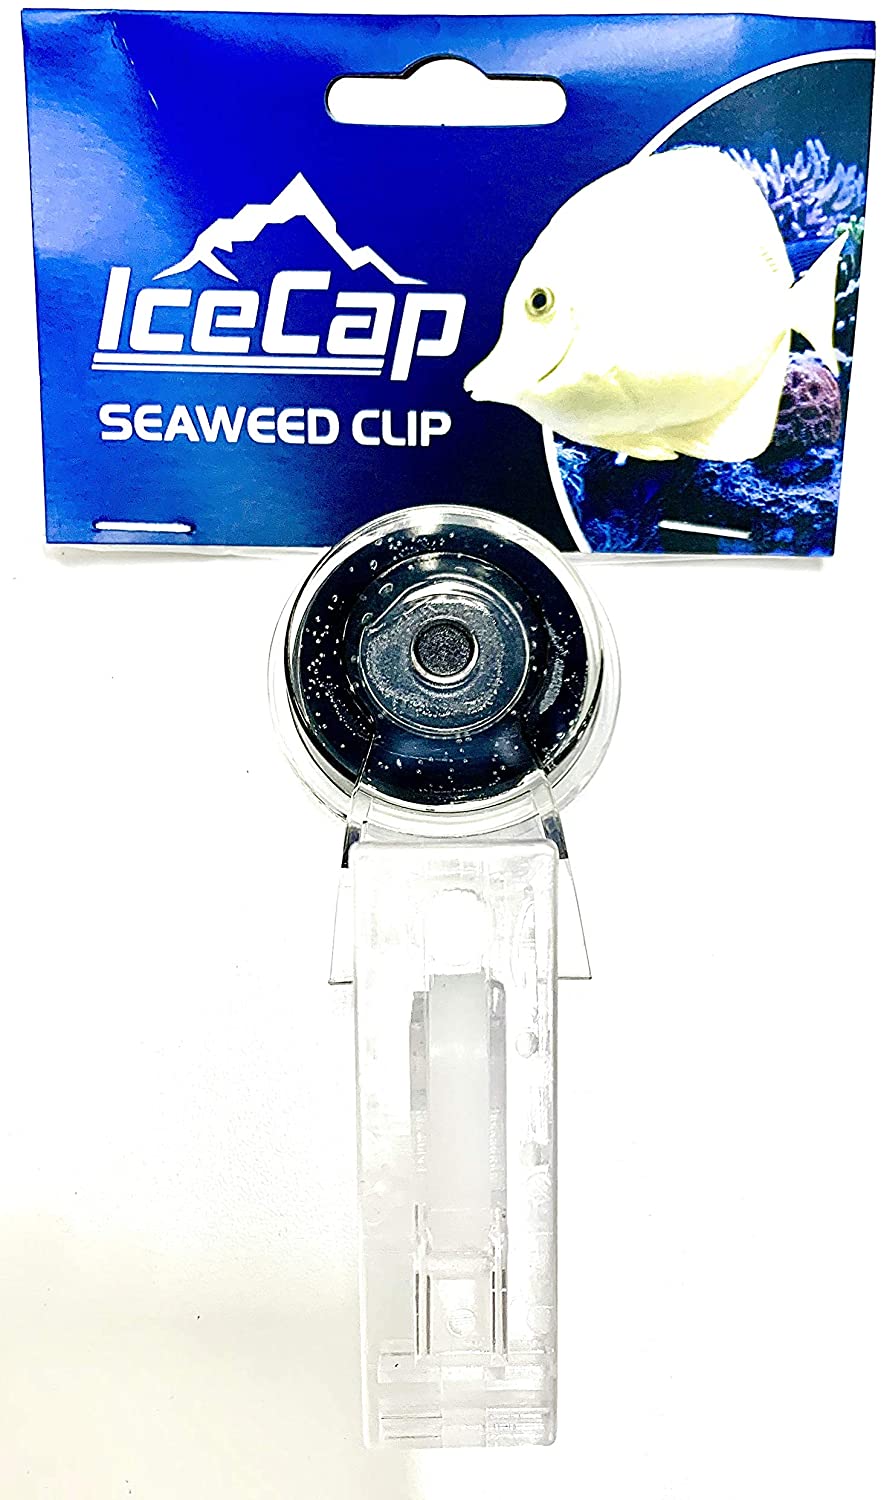 Seaweed Clip, Icecap/CORALVUE - Keepin' it Reef